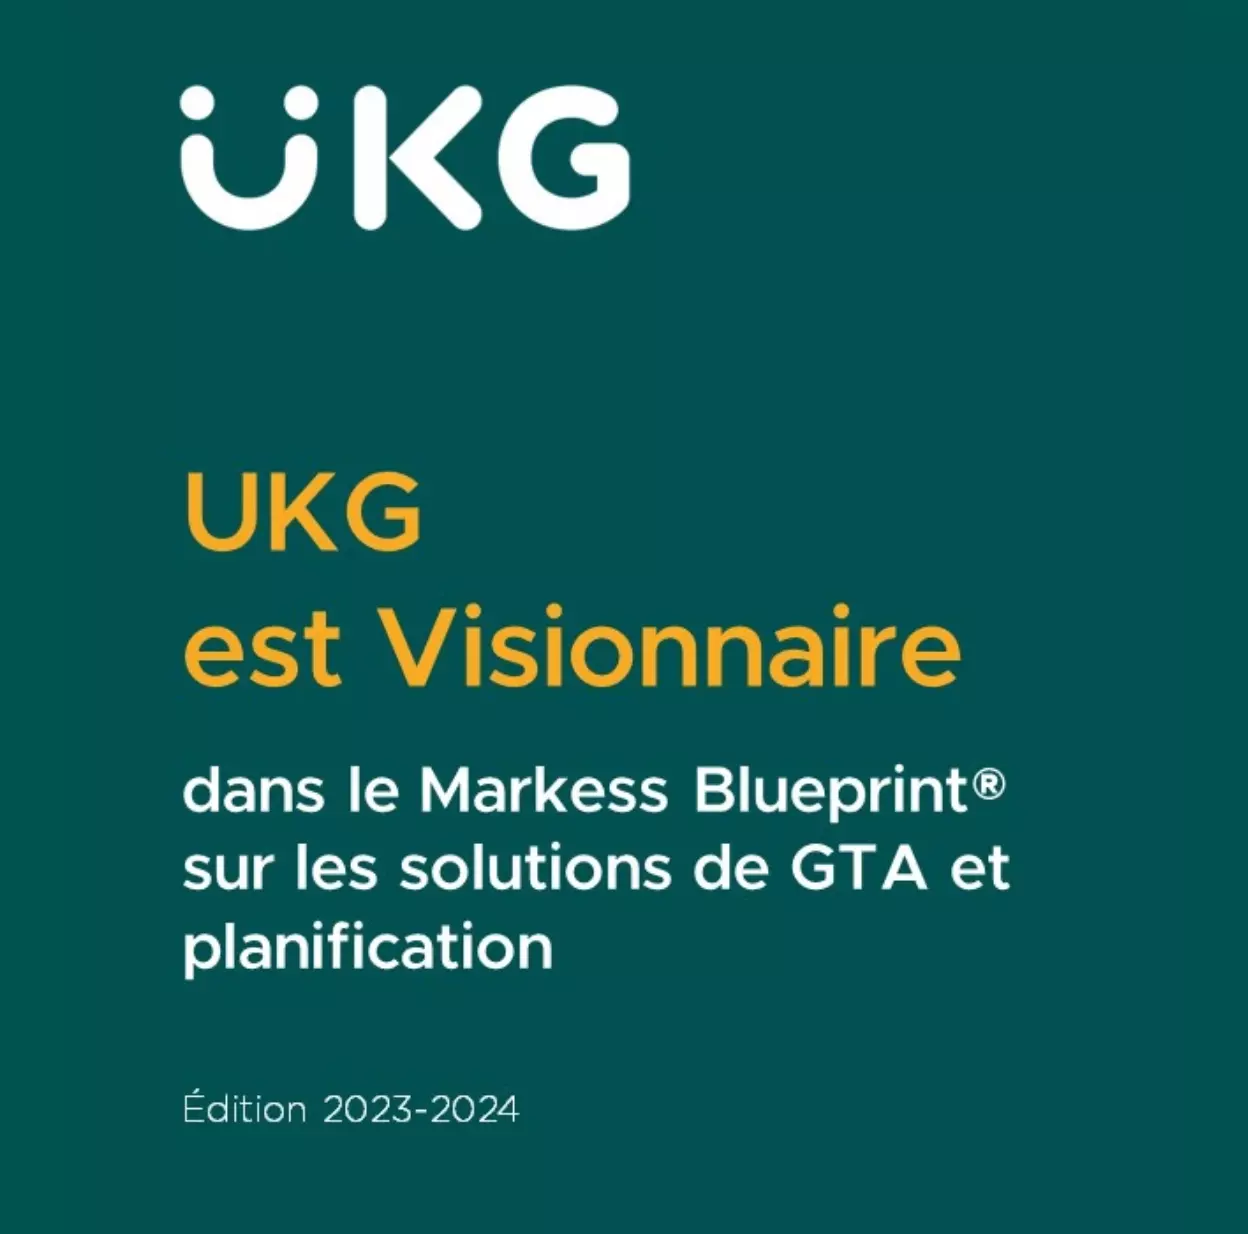 UKG positionné Visionnaire sur les solutions GTA et planification dans le Blueprint de Markess by Exaegis